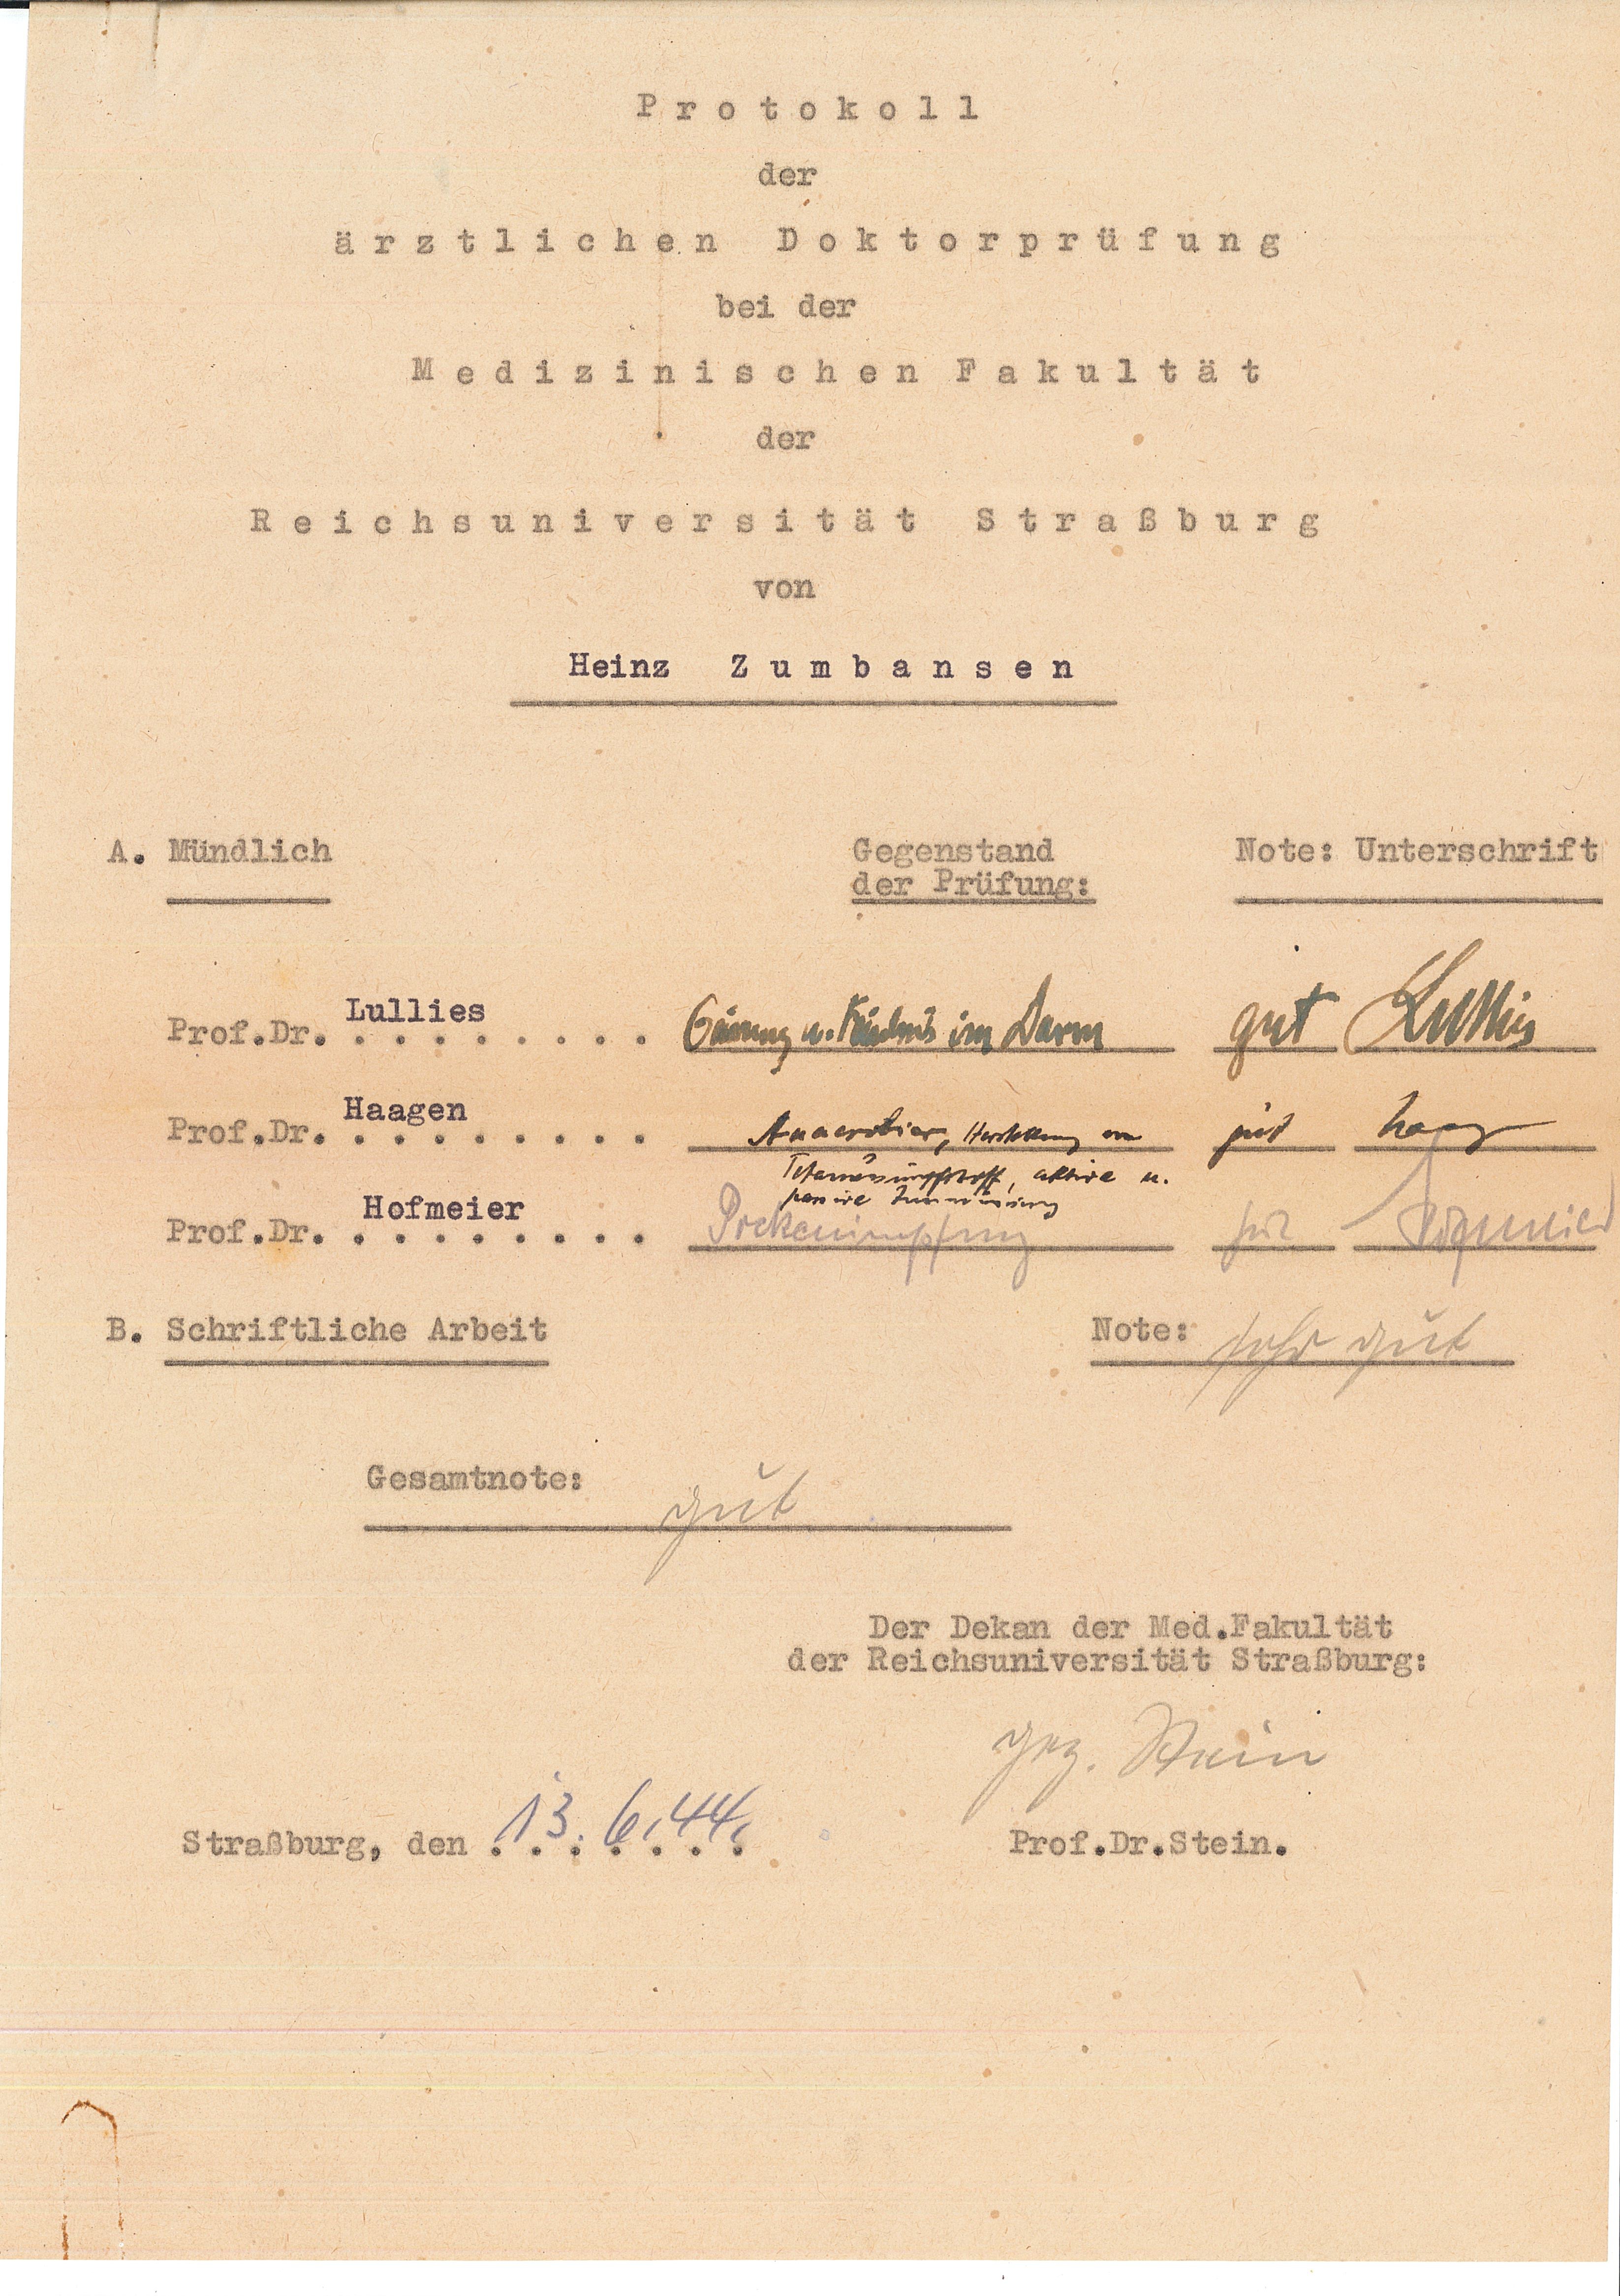 Procès-verbal de la soutenance de la thèse de Zumbansen, 13 juin 1944.